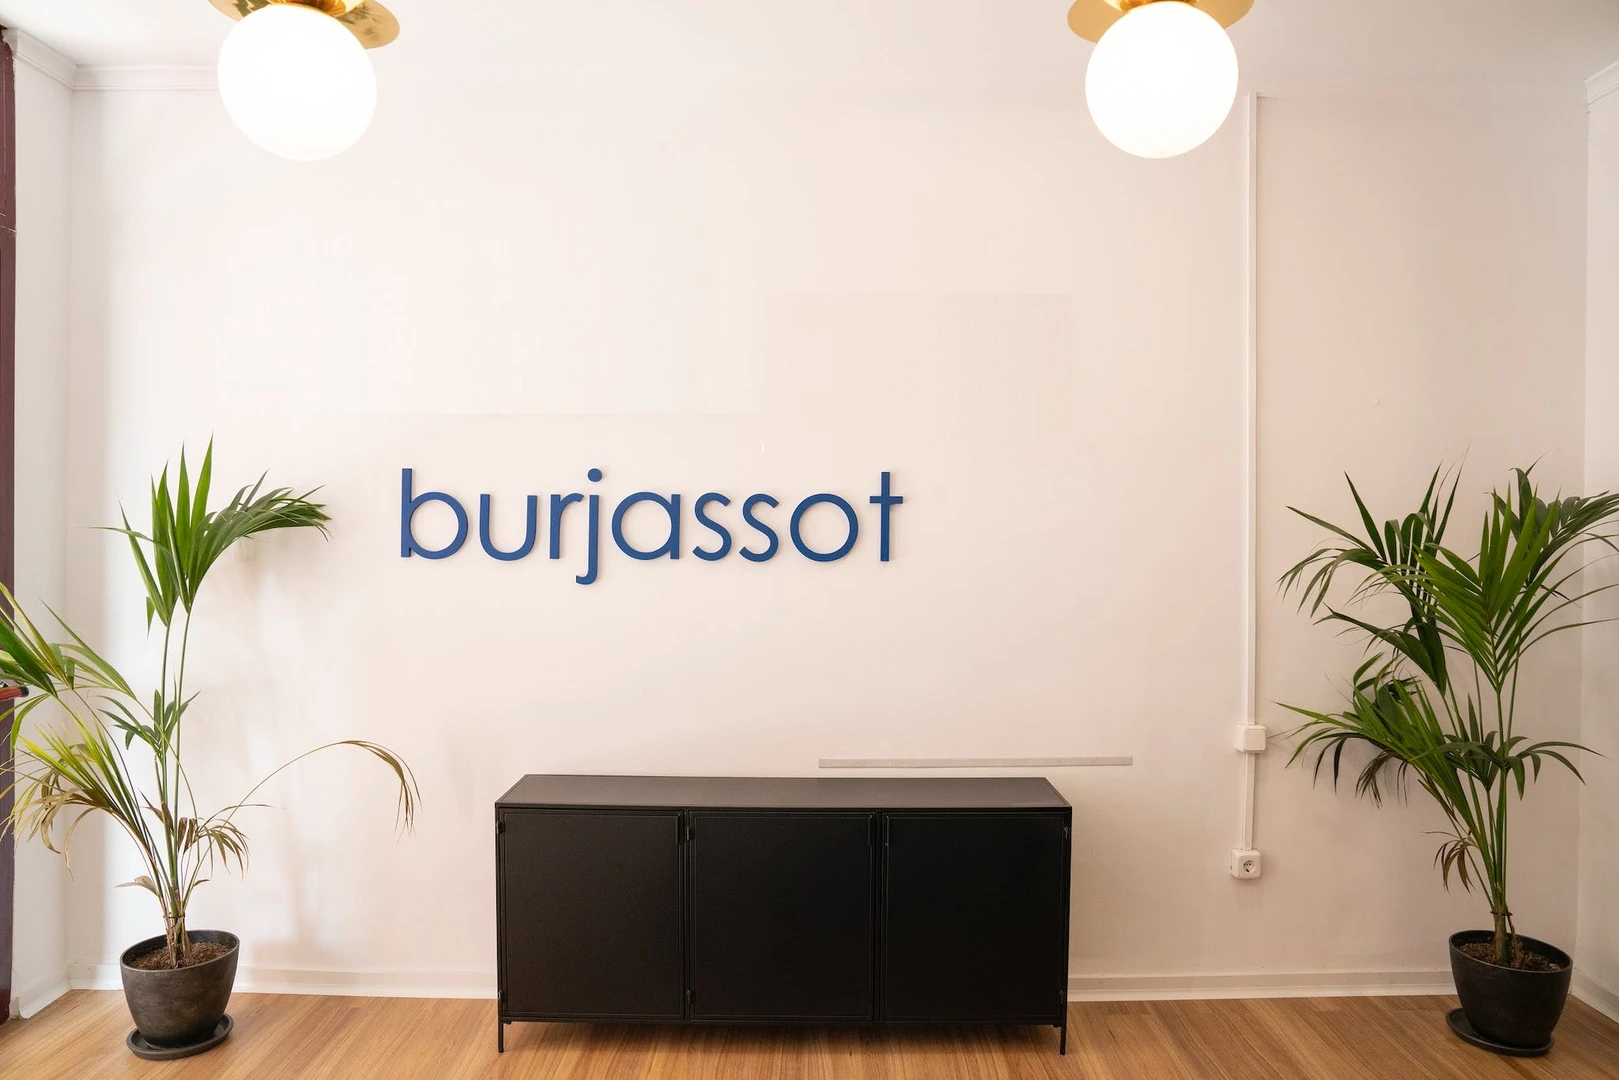 Stanza economica in condivisione a Burjassot